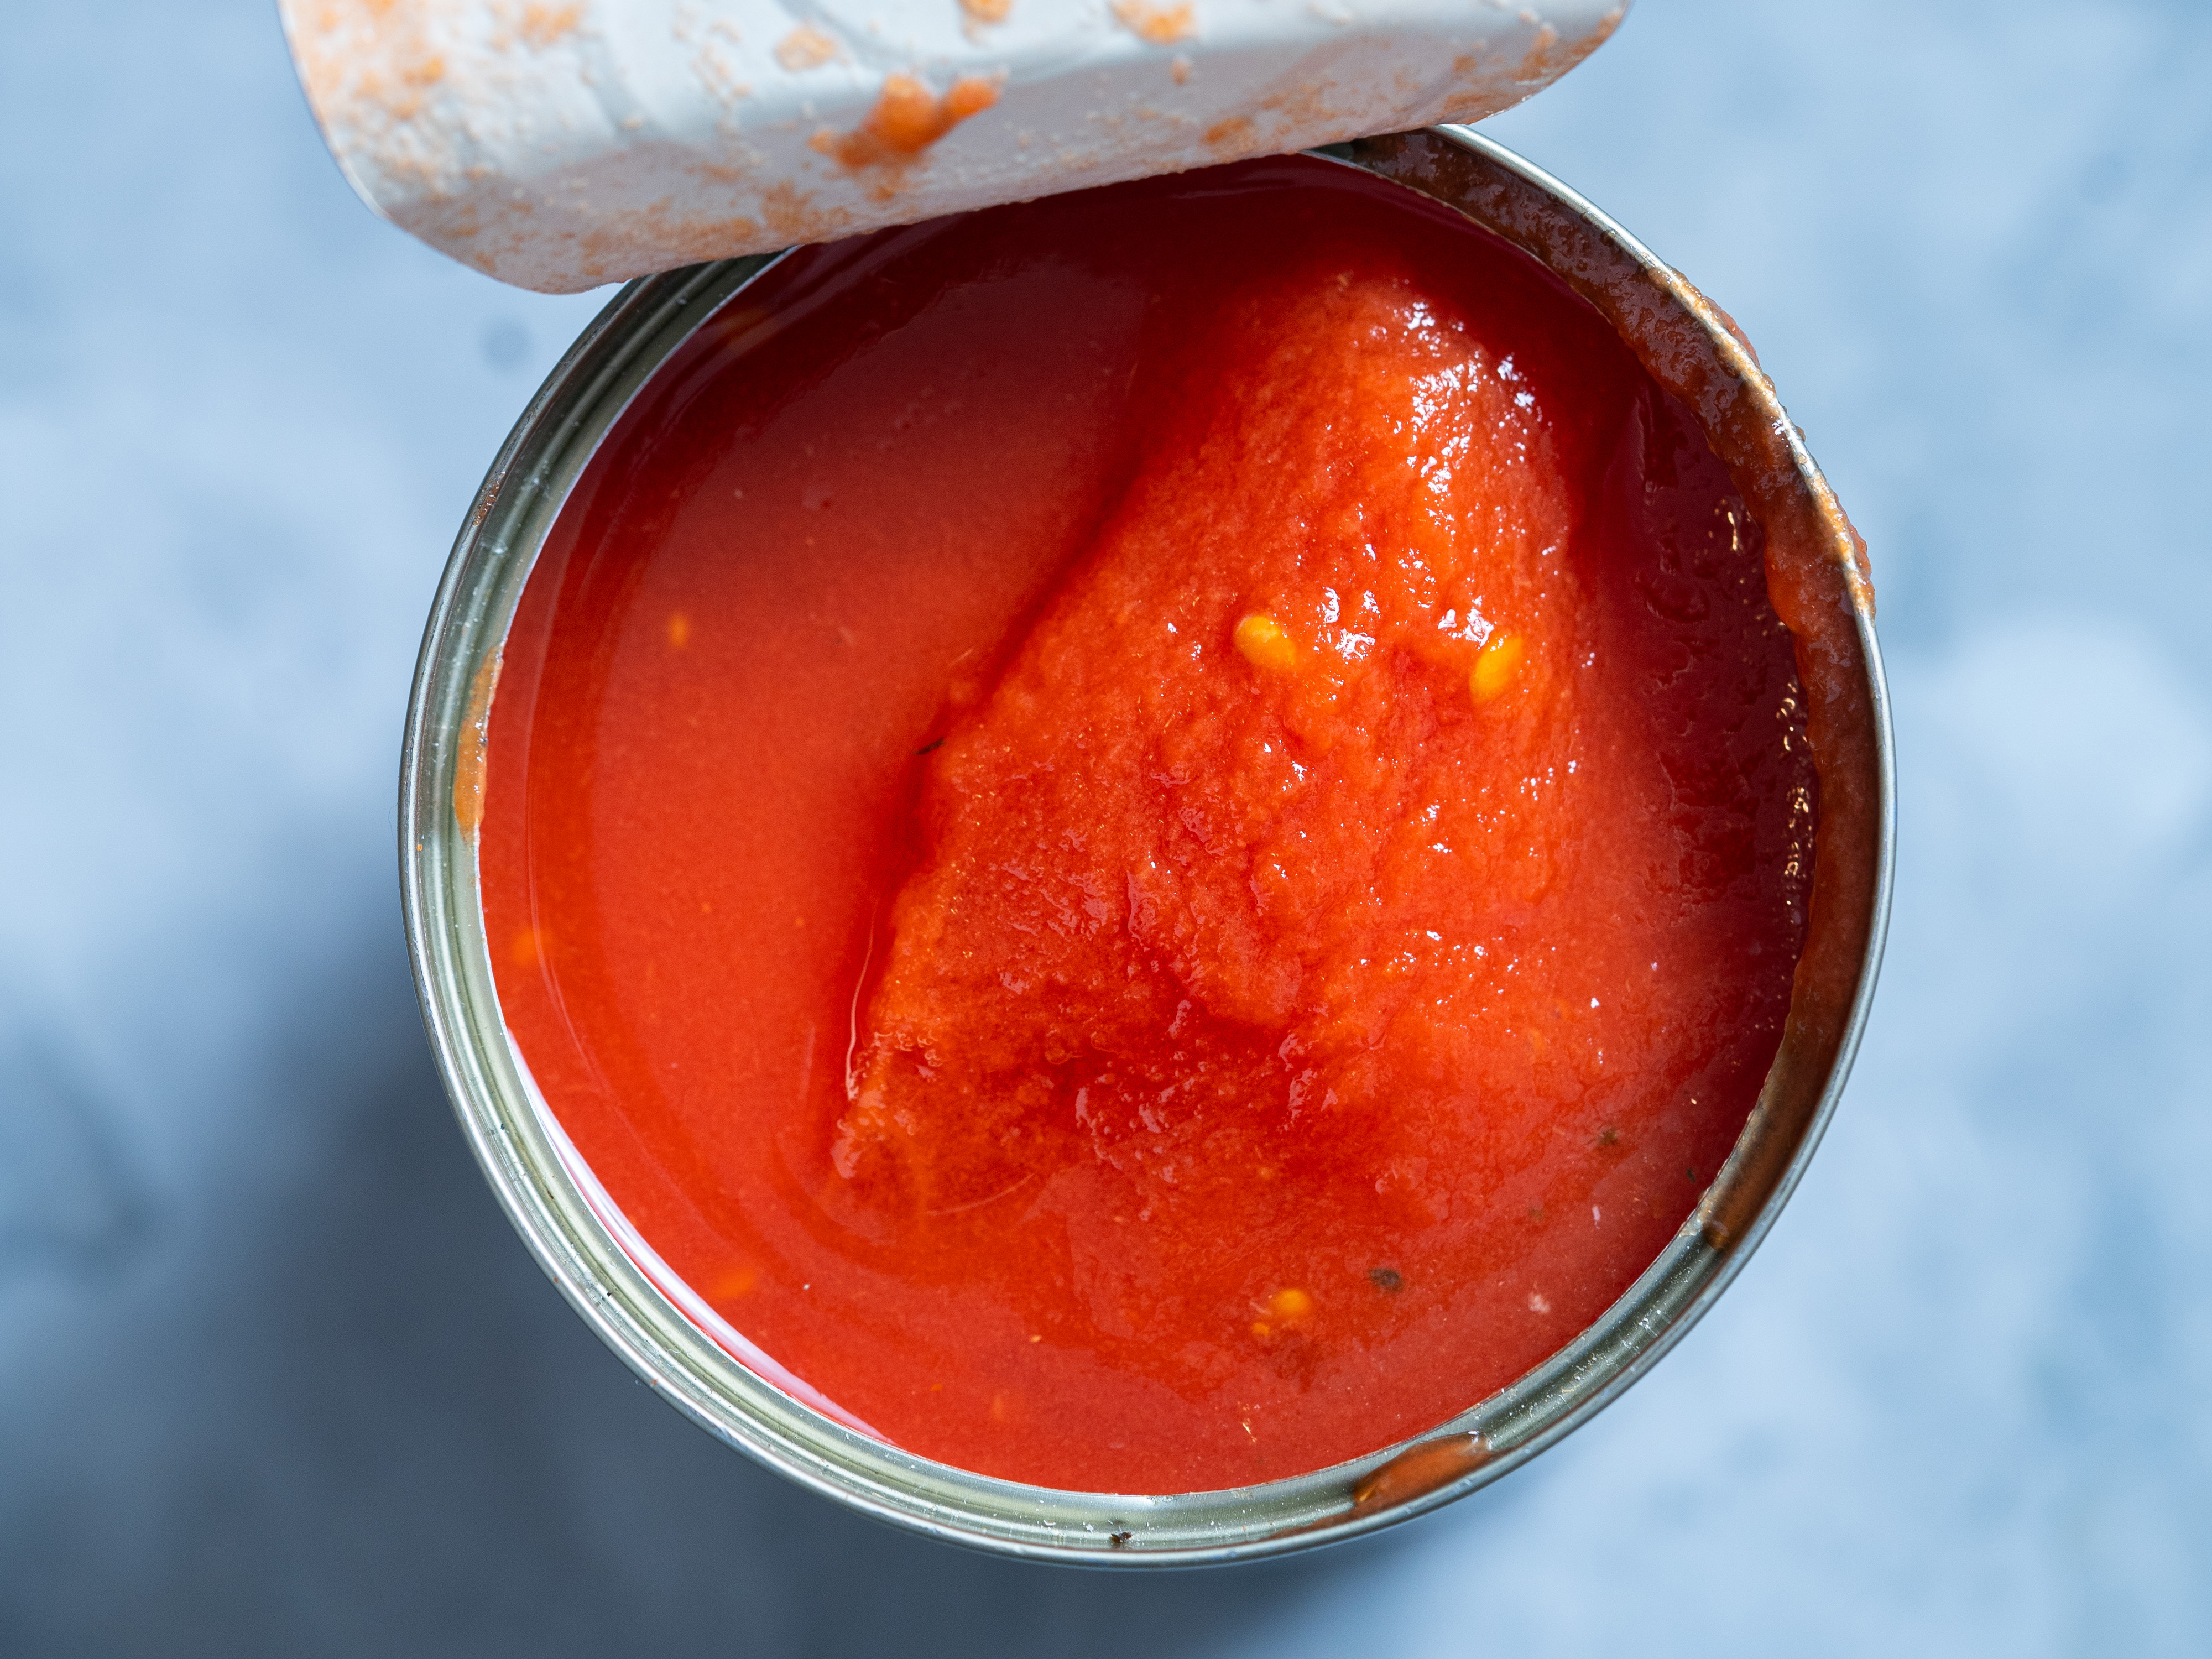 best tomato paste substitute